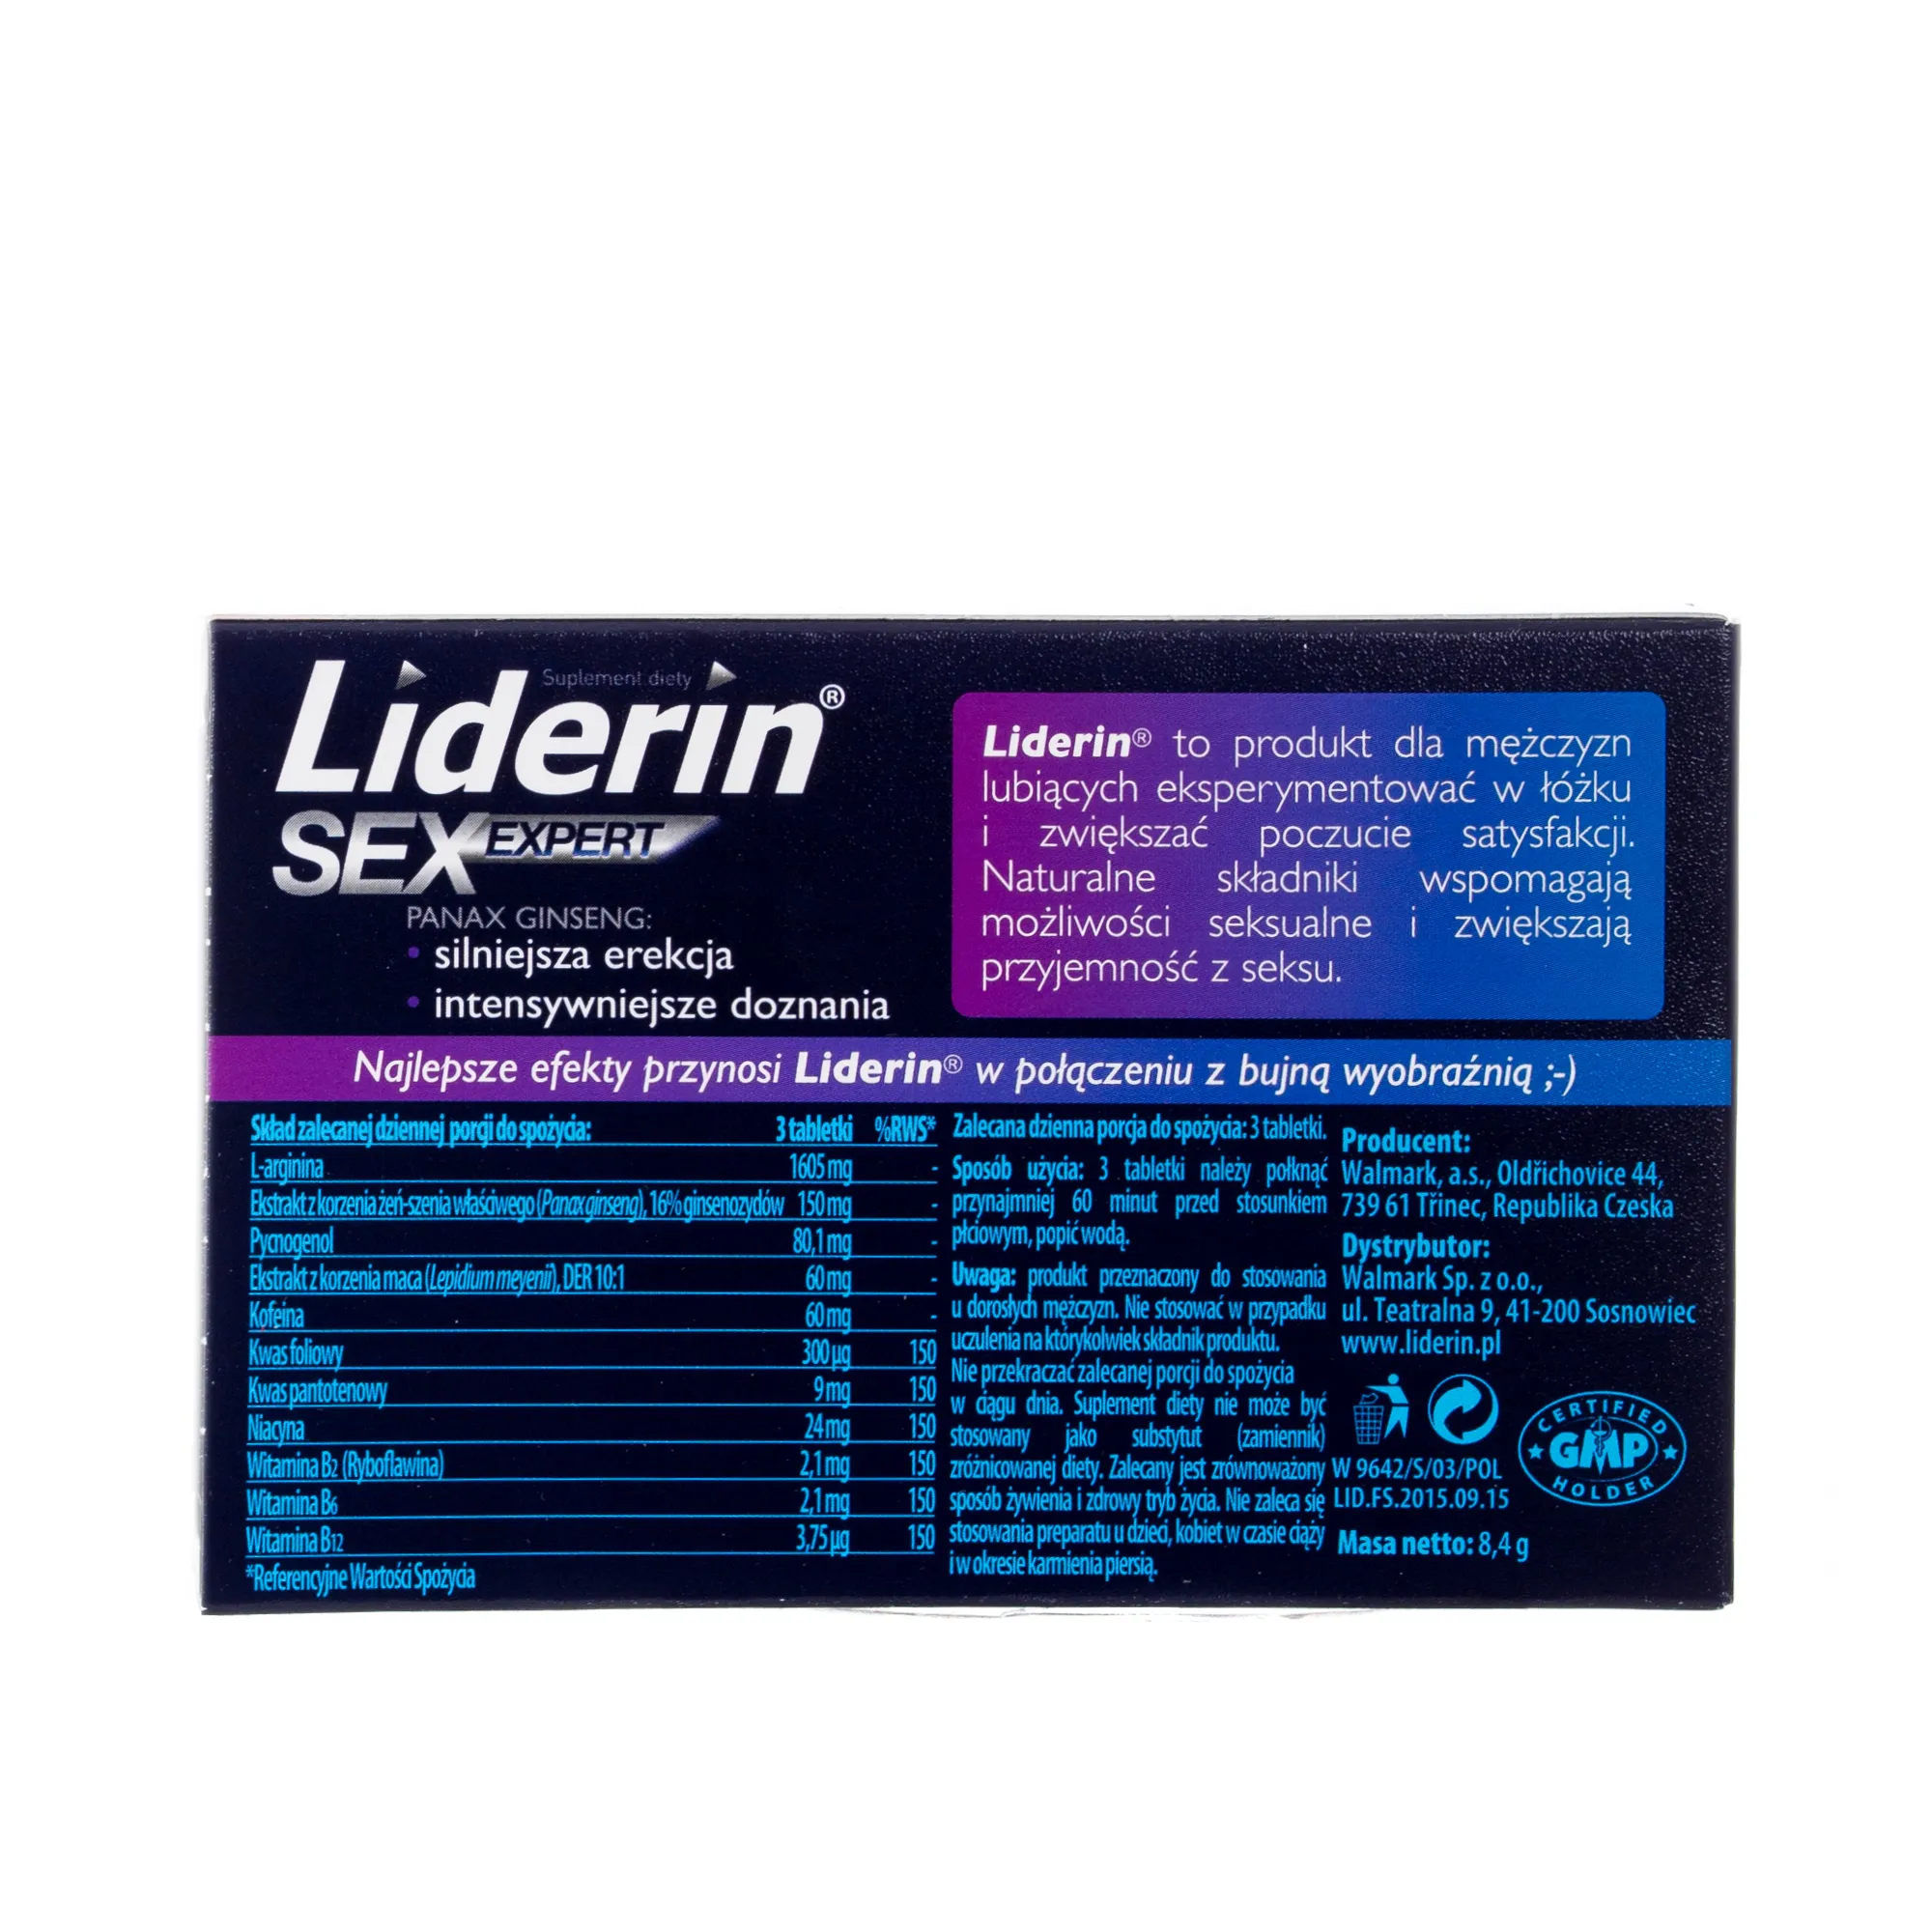 Liderin SexExpert suplement diety, 6 tabletek 